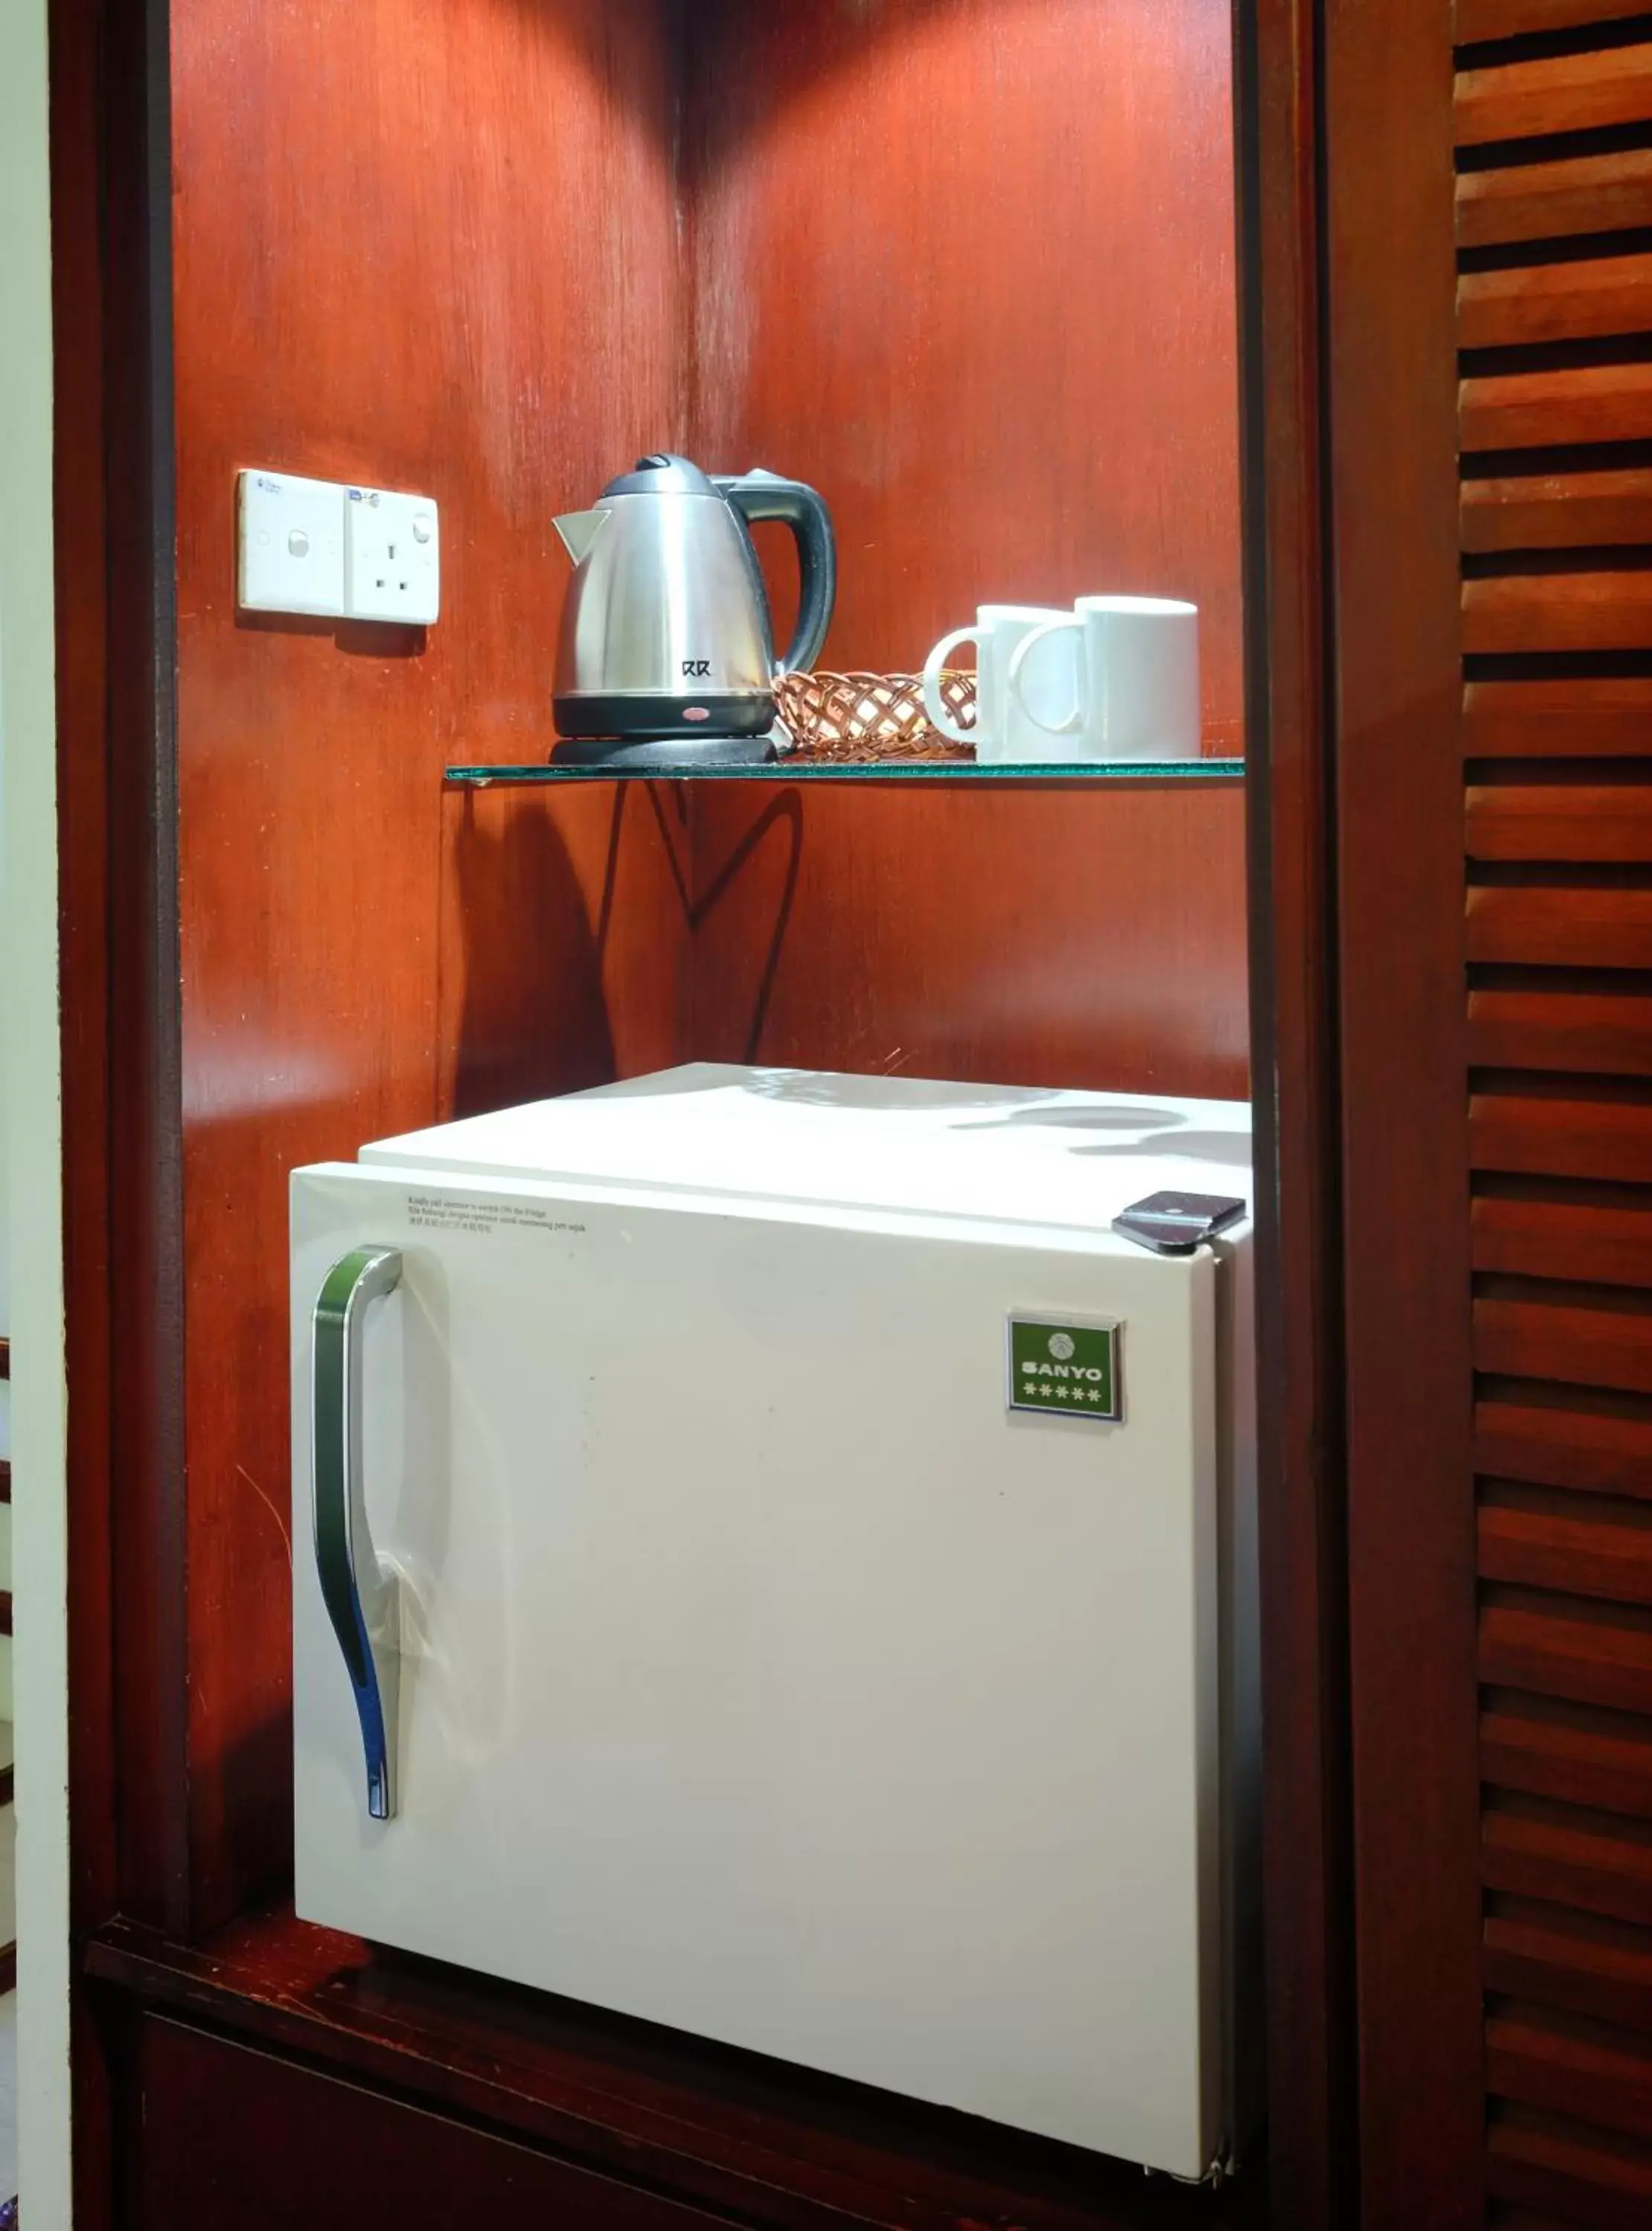 Coffee/tea facilities, Bathroom in Hotel Shangri-la Kota Kinabalu